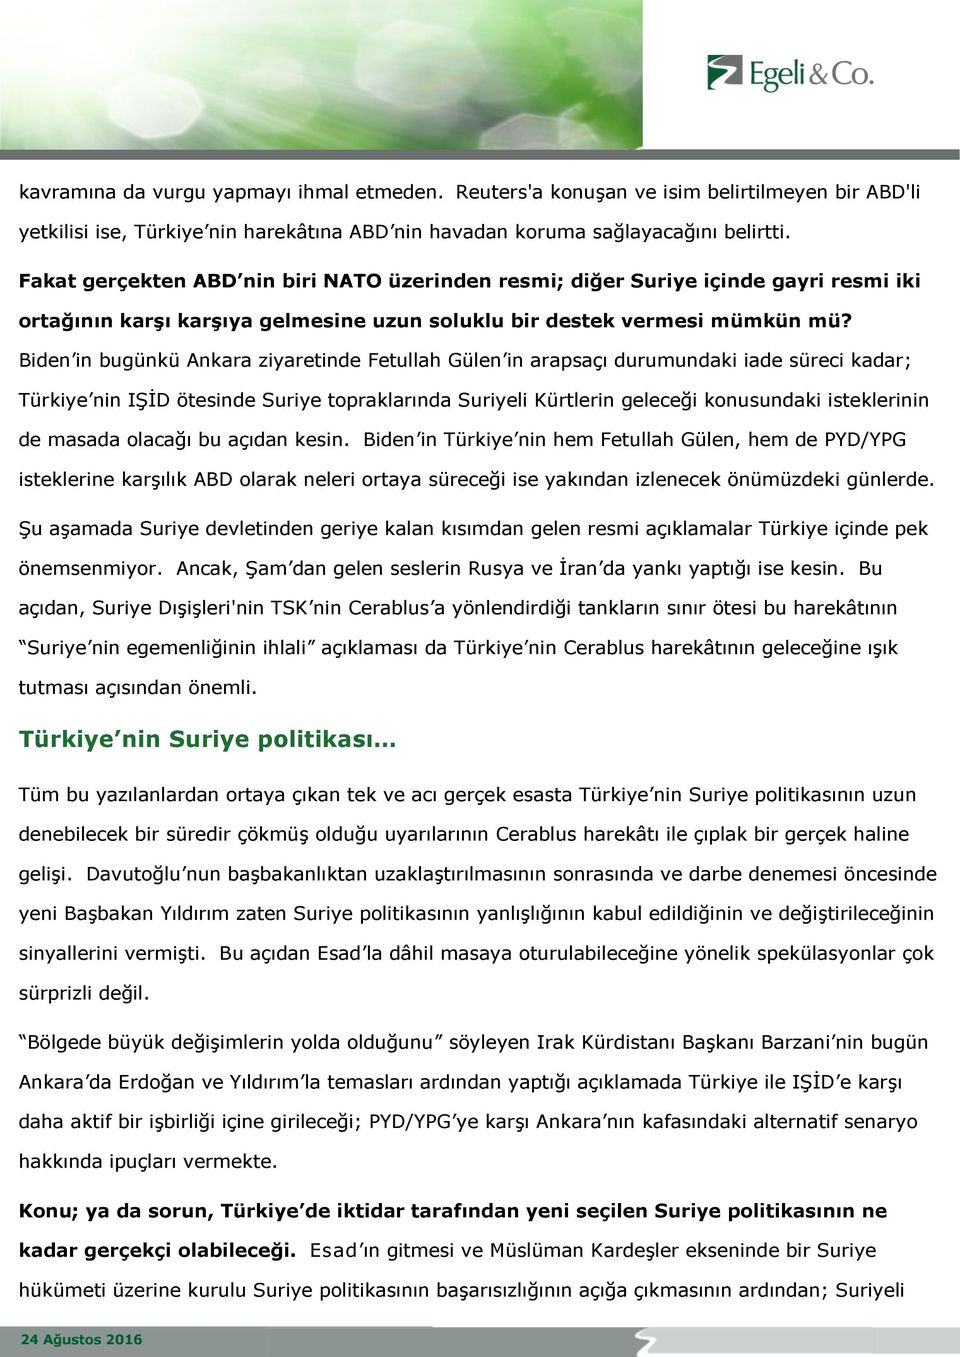 Biden in bugünkü Ankara ziyaretinde Fetullah Gülen in arapsaçı durumundaki iade süreci kadar; Türkiye nin IŞİD ötesinde Suriye topraklarında Suriyeli Kürtlerin geleceği konusundaki isteklerinin de